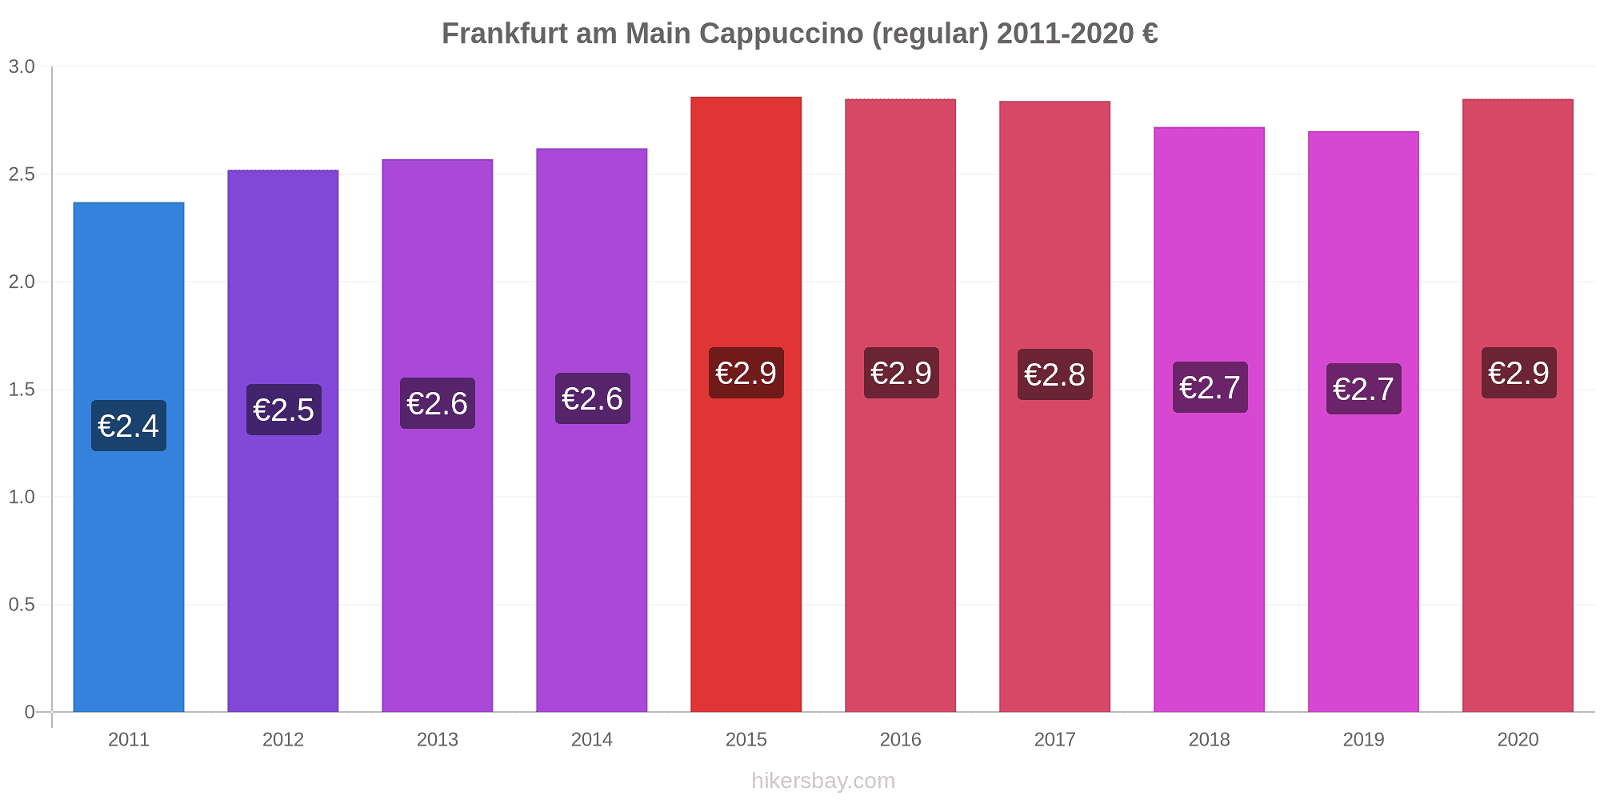 Frankfurt am Main variação de preço Capuccino (regular) hikersbay.com